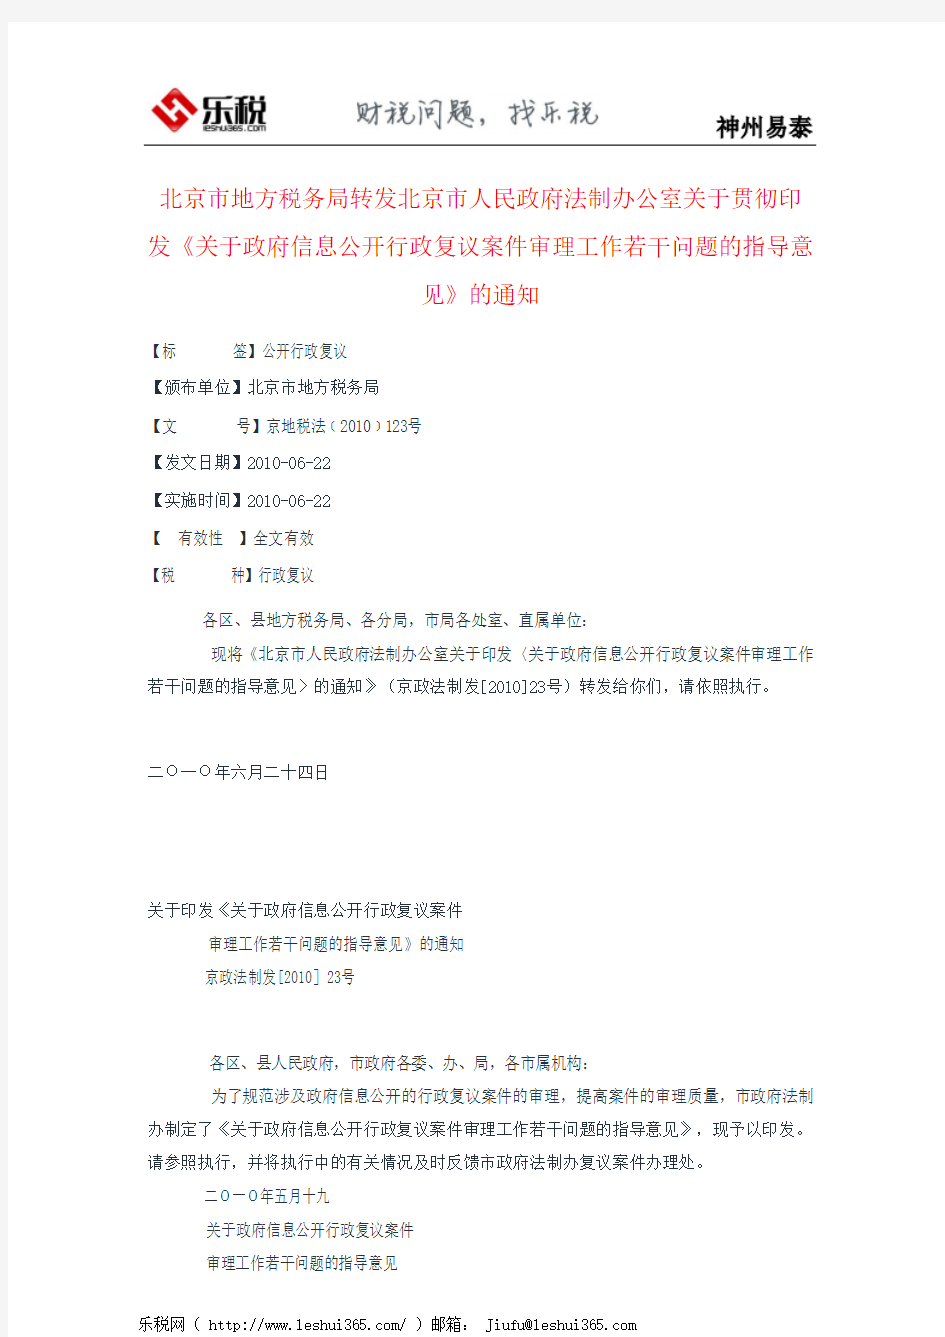 北京市地方税务局转发北京市人民政府法制办公室关于贯彻印发《关